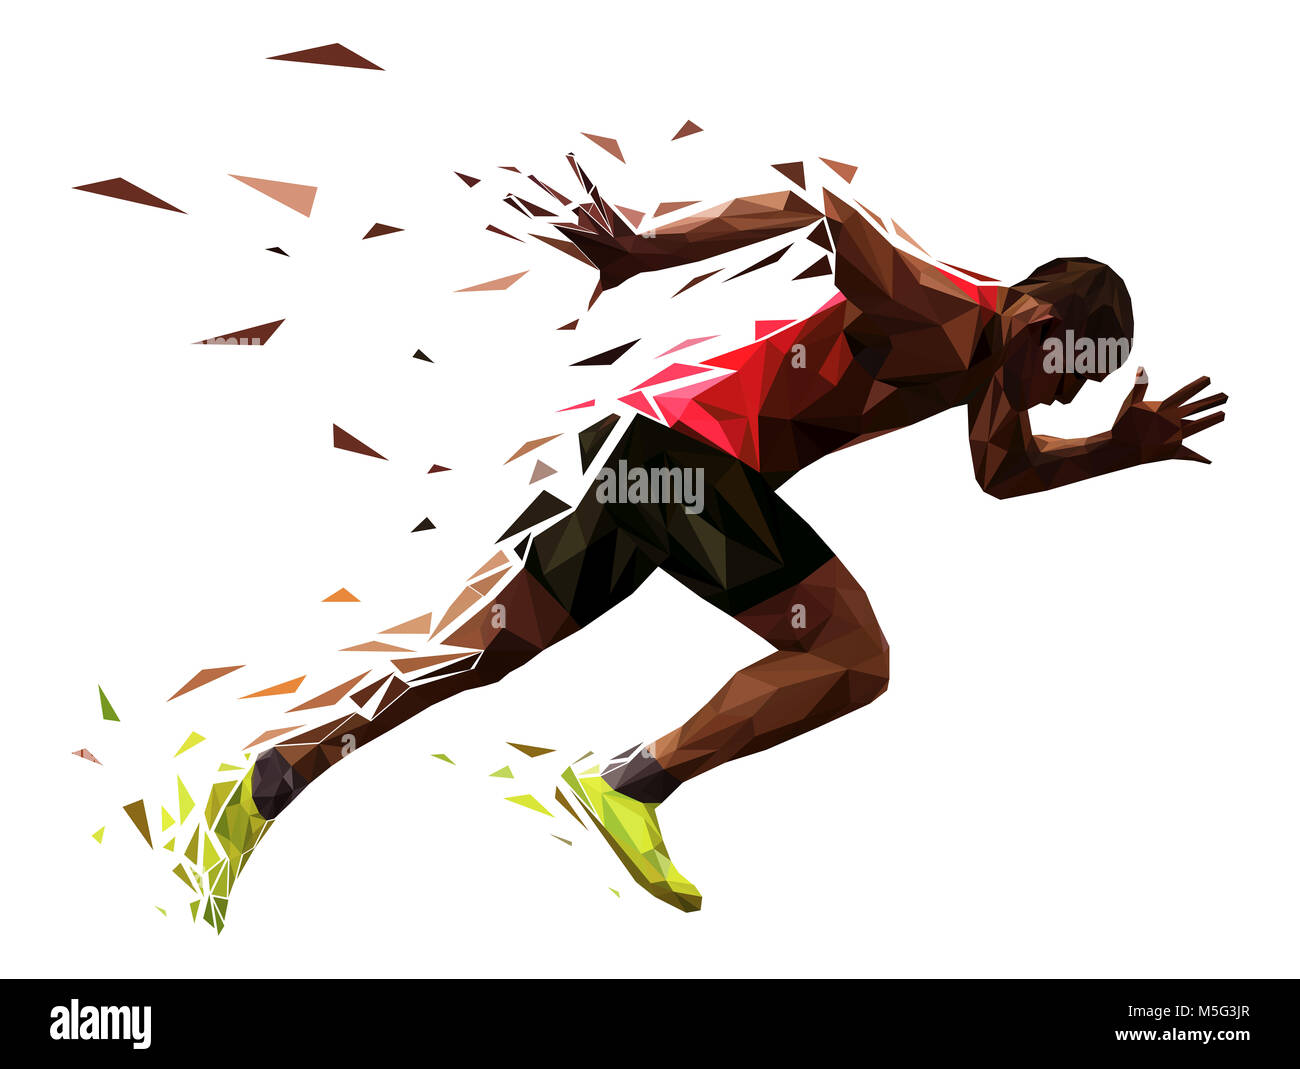 Runner atleta sprint explosivo inicio ejecutar ilustración vectorial Foto de stock